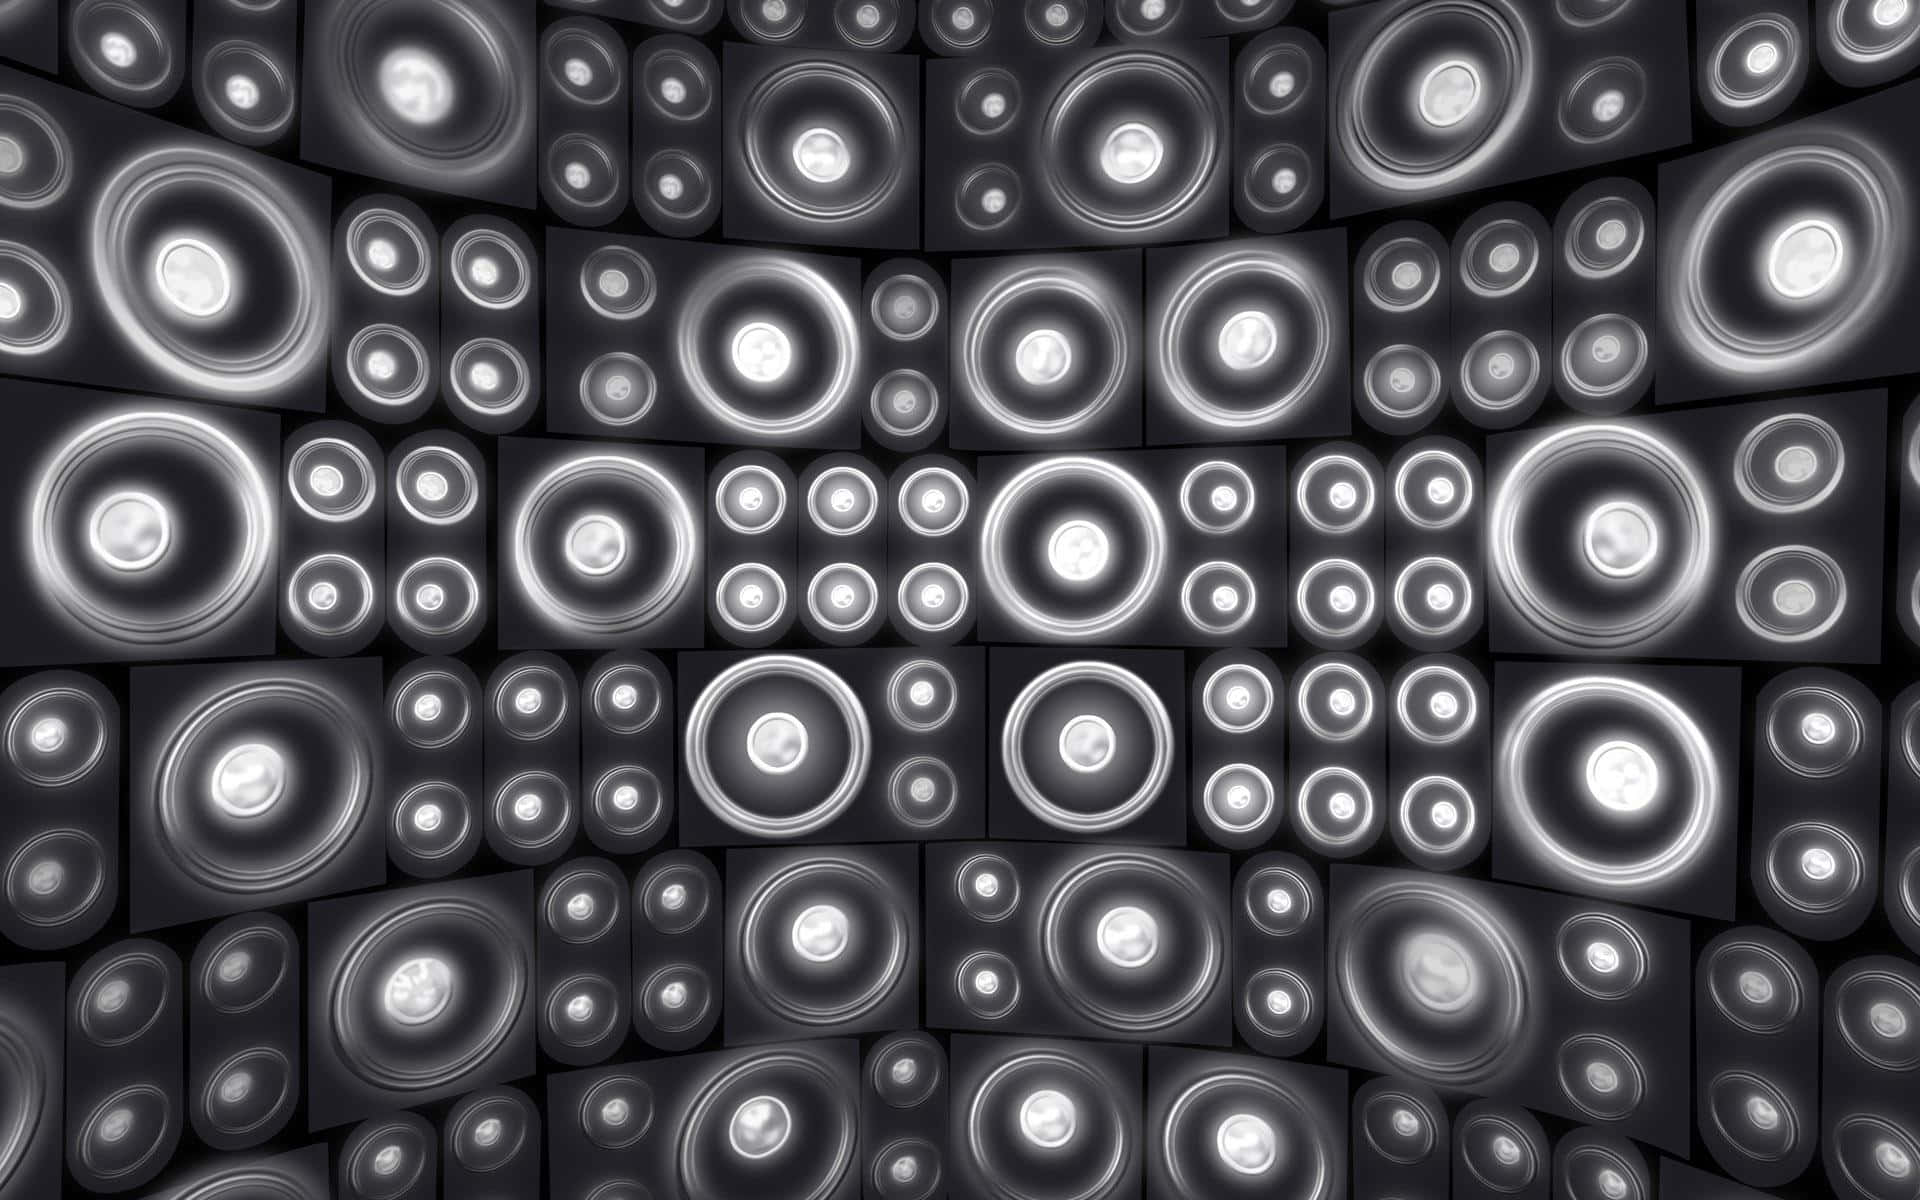 Wallof Speakers Pattern.jpg